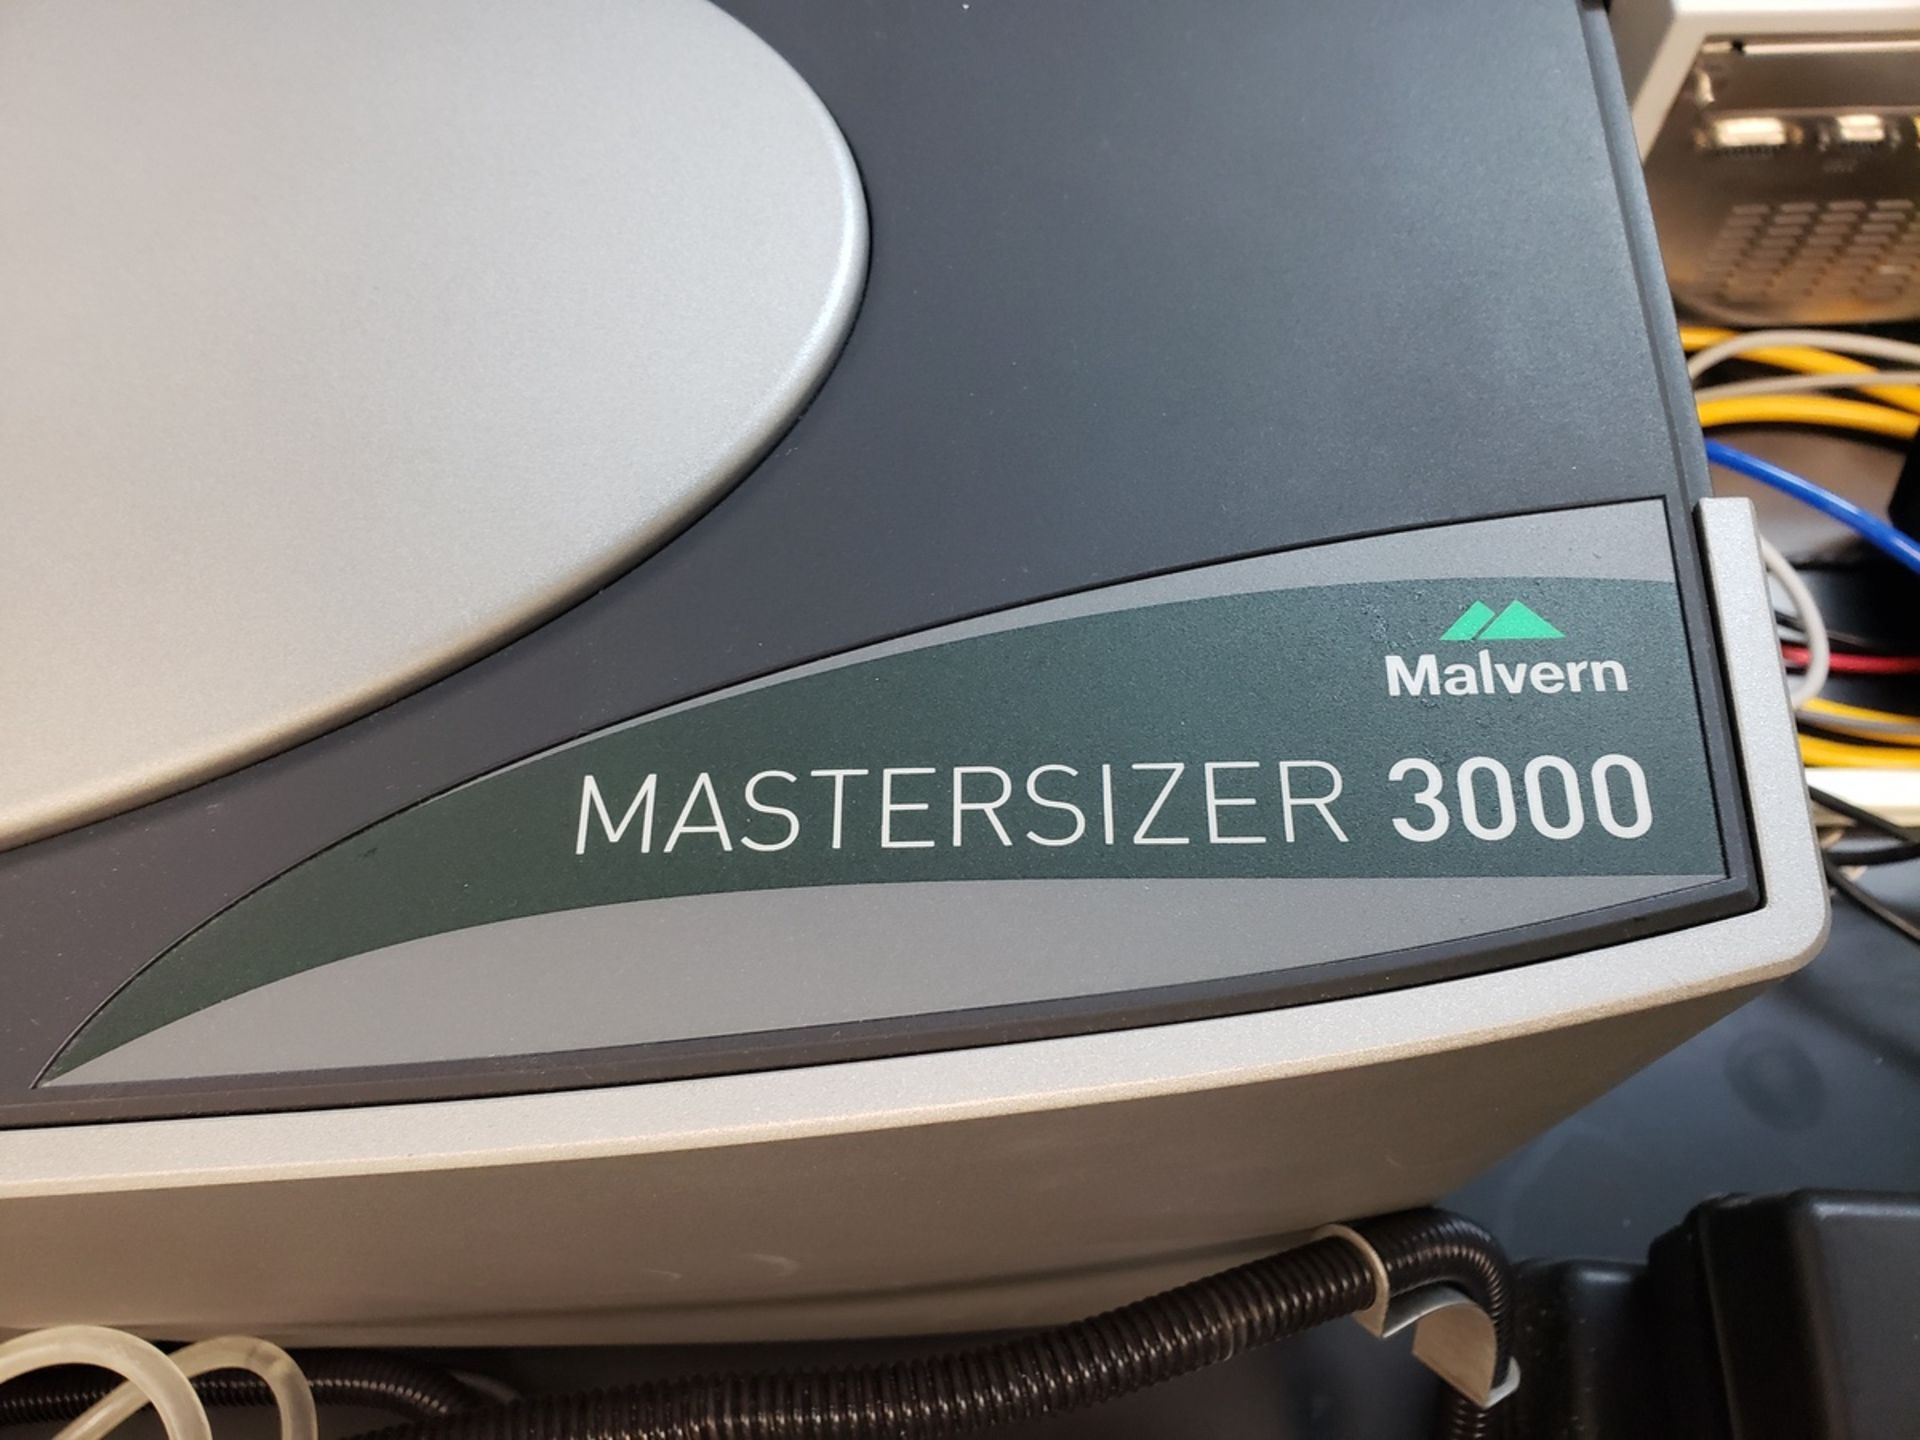 Malvern Mastersizer 3000 Laser Diffraction Particle Size Analyzer, S/N MAL1119009 W/ Malvern Powder - Image 3 of 12